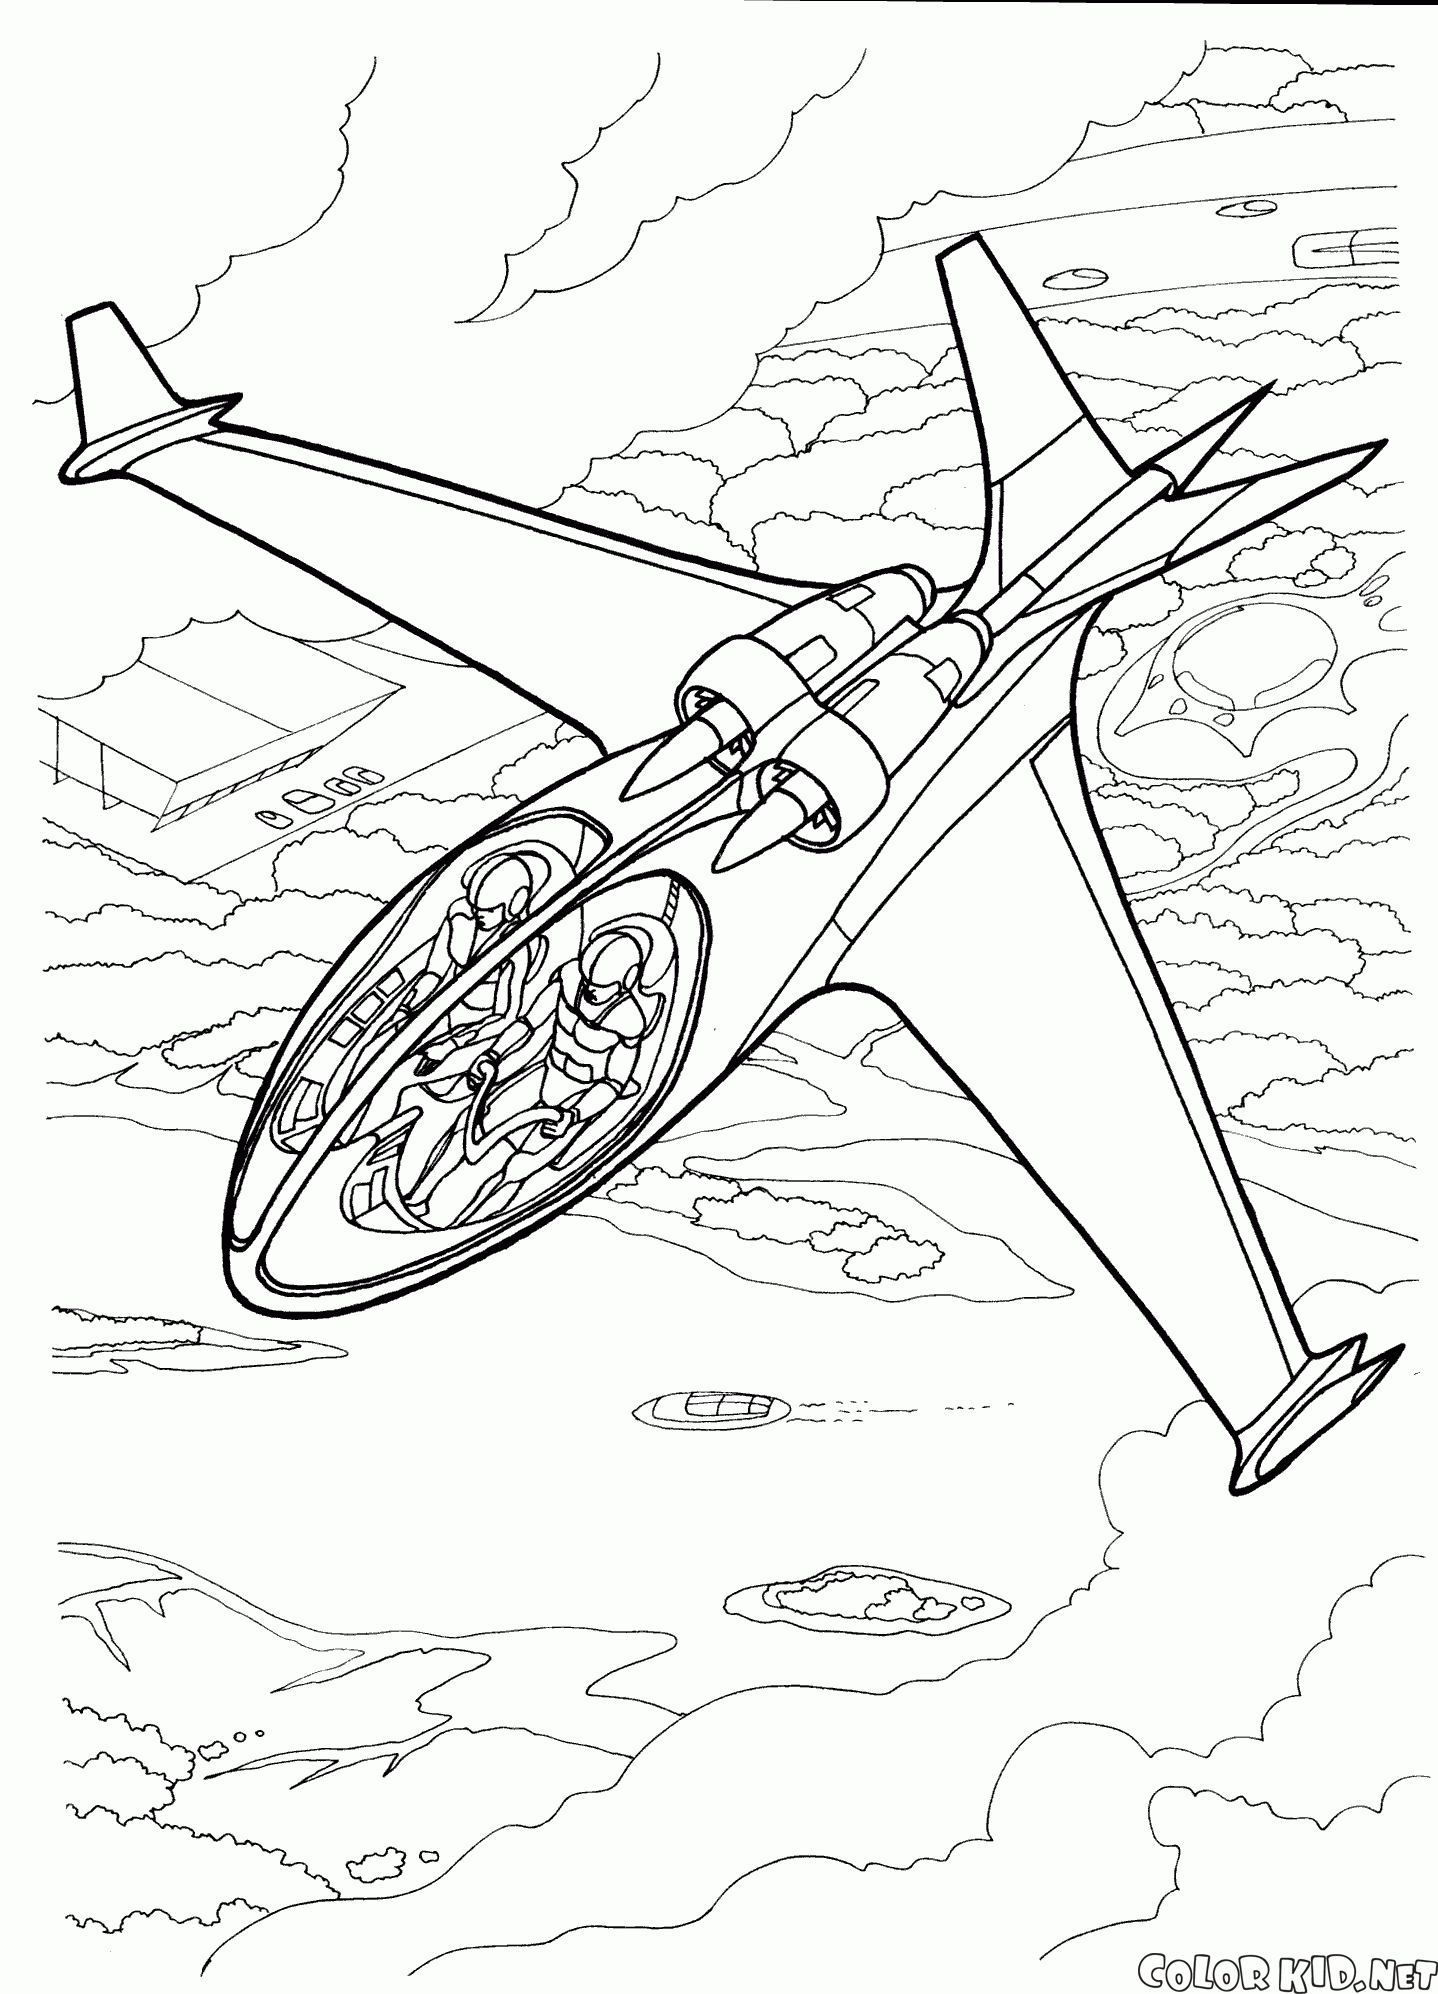 طائرة نفاثة صغيرة